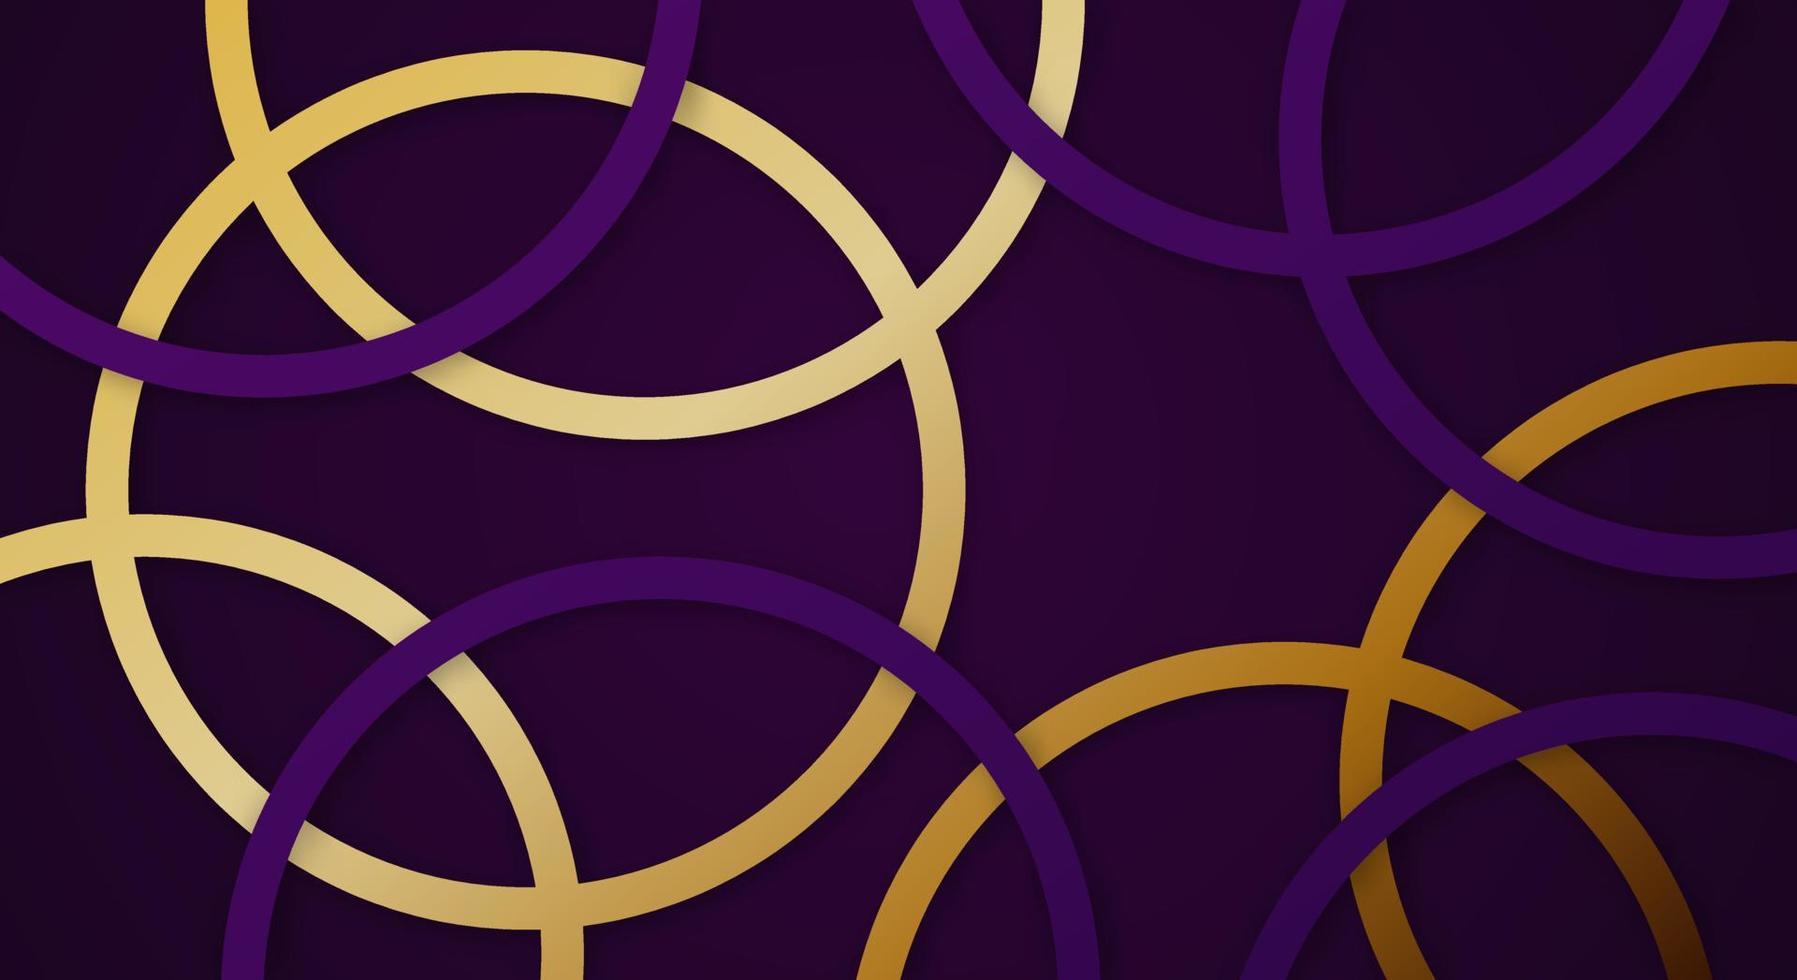 abstract 3d meetkundig cirkel strepen lijnen papercut achtergrond met donker Purper en goud kleuren realistisch decoratie patroon vector